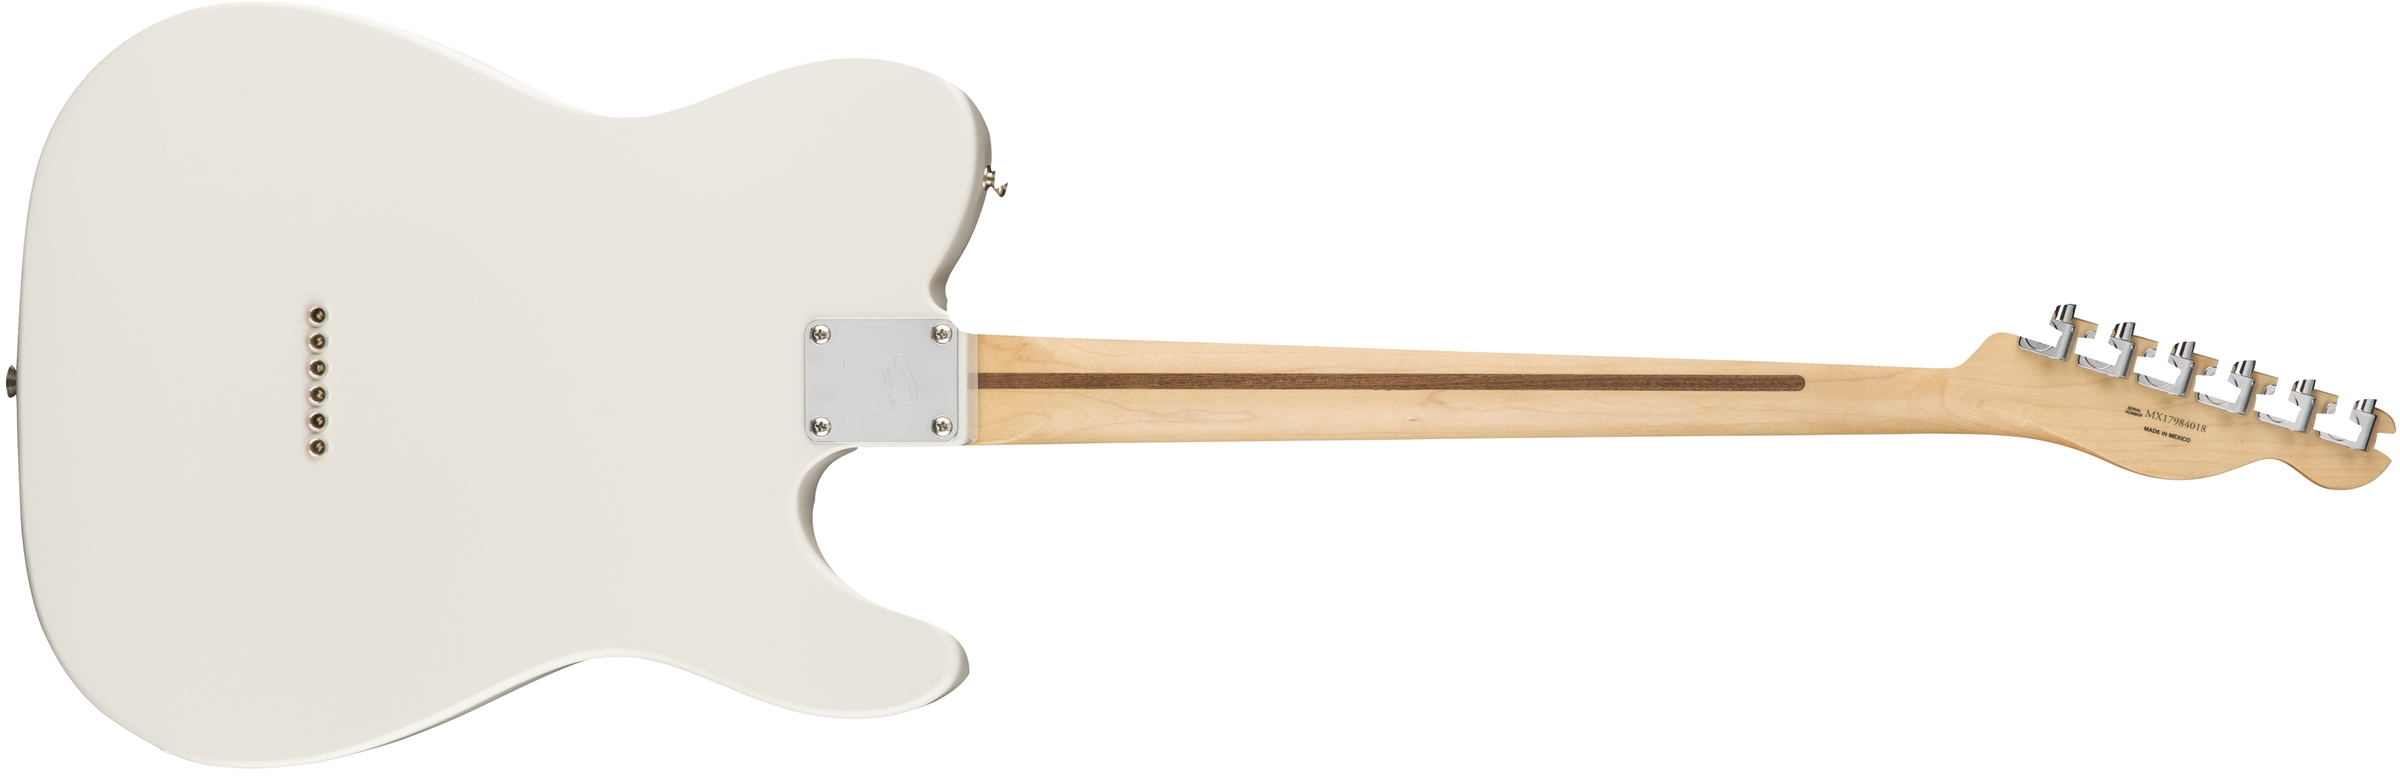 Fender Tele Player Lh Gaucher Mex Ss Pf - Polar White - E-Gitarre für Linkshänder - Variation 1